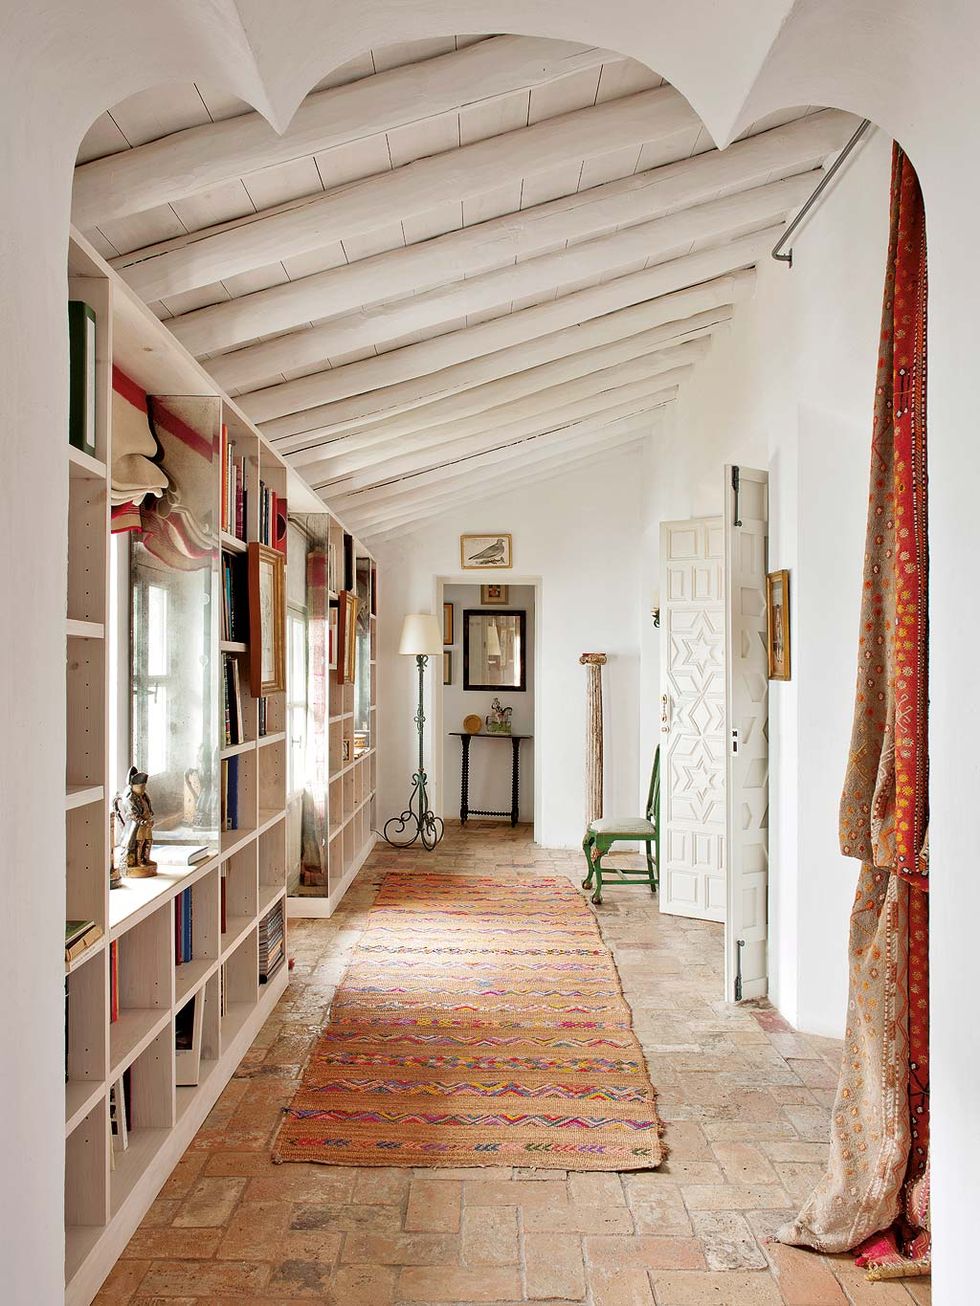 Colocar una alfombra en el pasillo: ¿es una buena idea? Analizamos